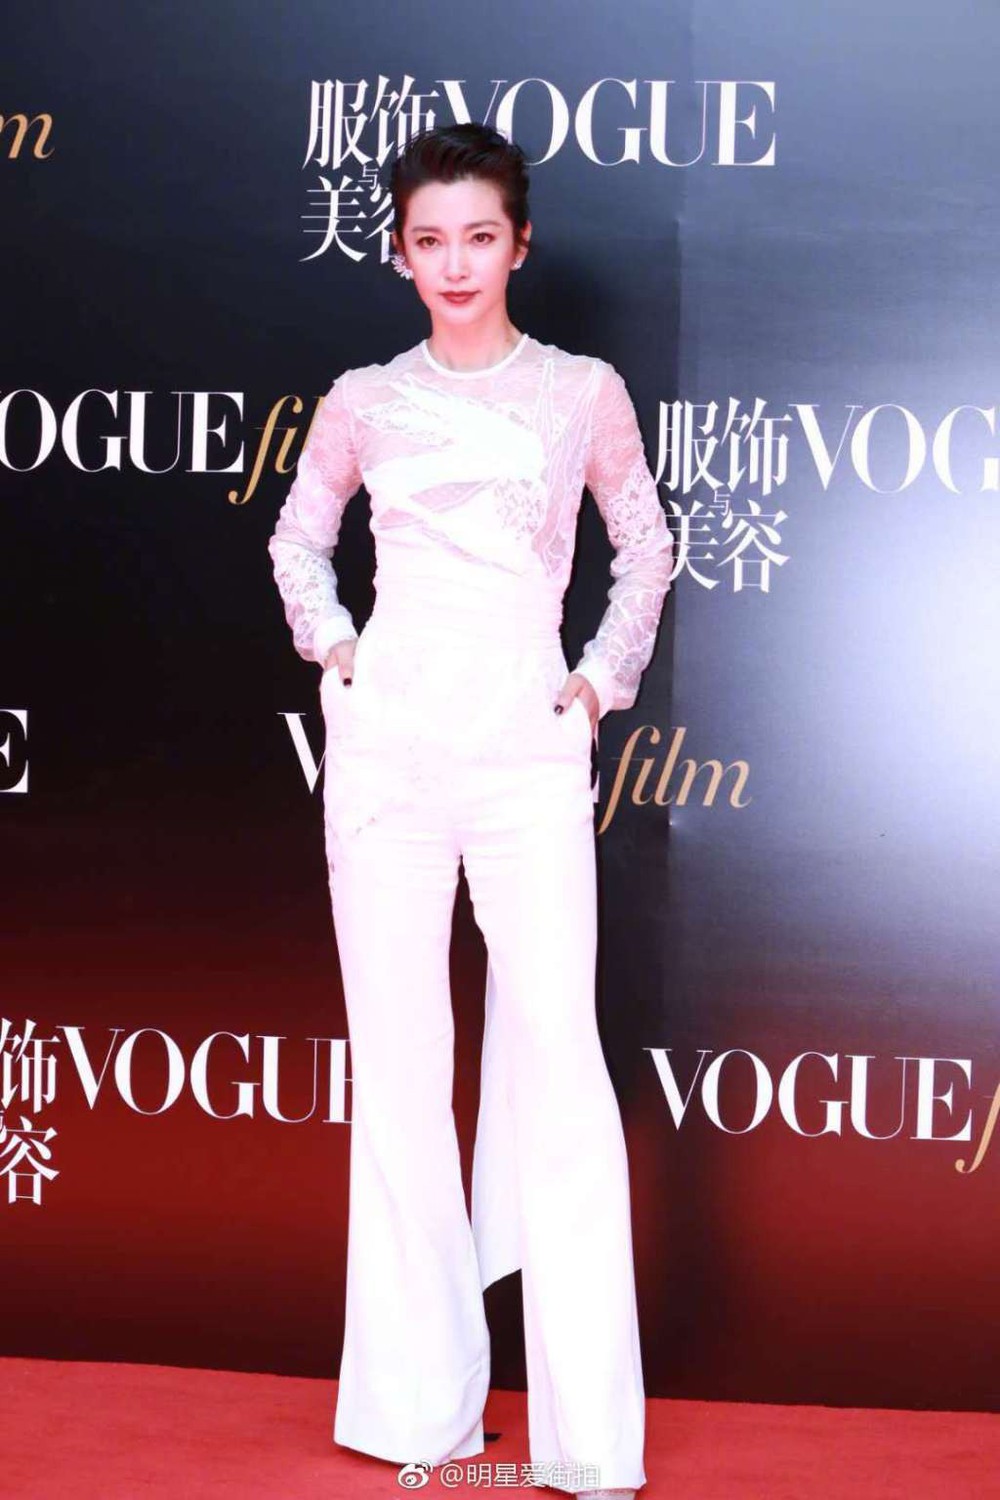 Thảm đỏ Vogue: Angela Baby trở thành tâm điểm vì đẹp xuất sắc, lấn át Dương Mịch - Lưu Thi Thi - Ảnh 7.